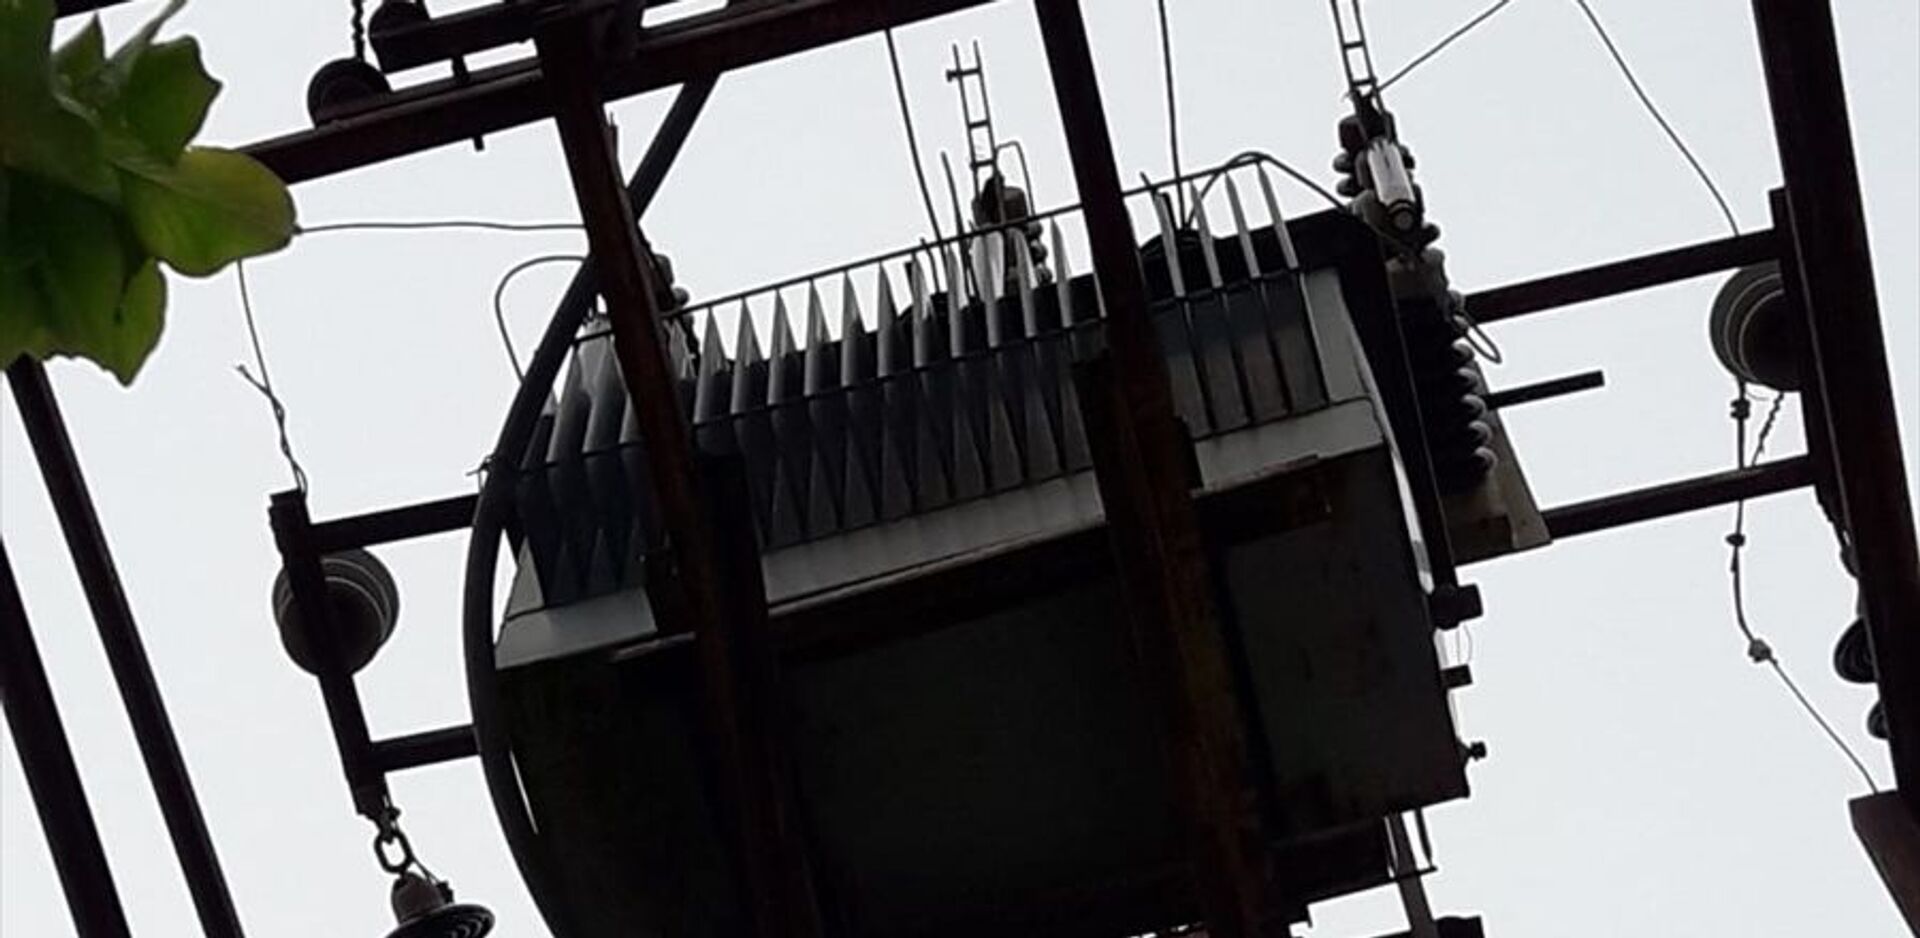 Antalya'nın Serik ilçesinde şebekeye su sağlayan pompaların kablolarının çalınması 10 saatlik kesintiye yol açtı. - Sputnik Türkiye, 1920, 18.04.2021